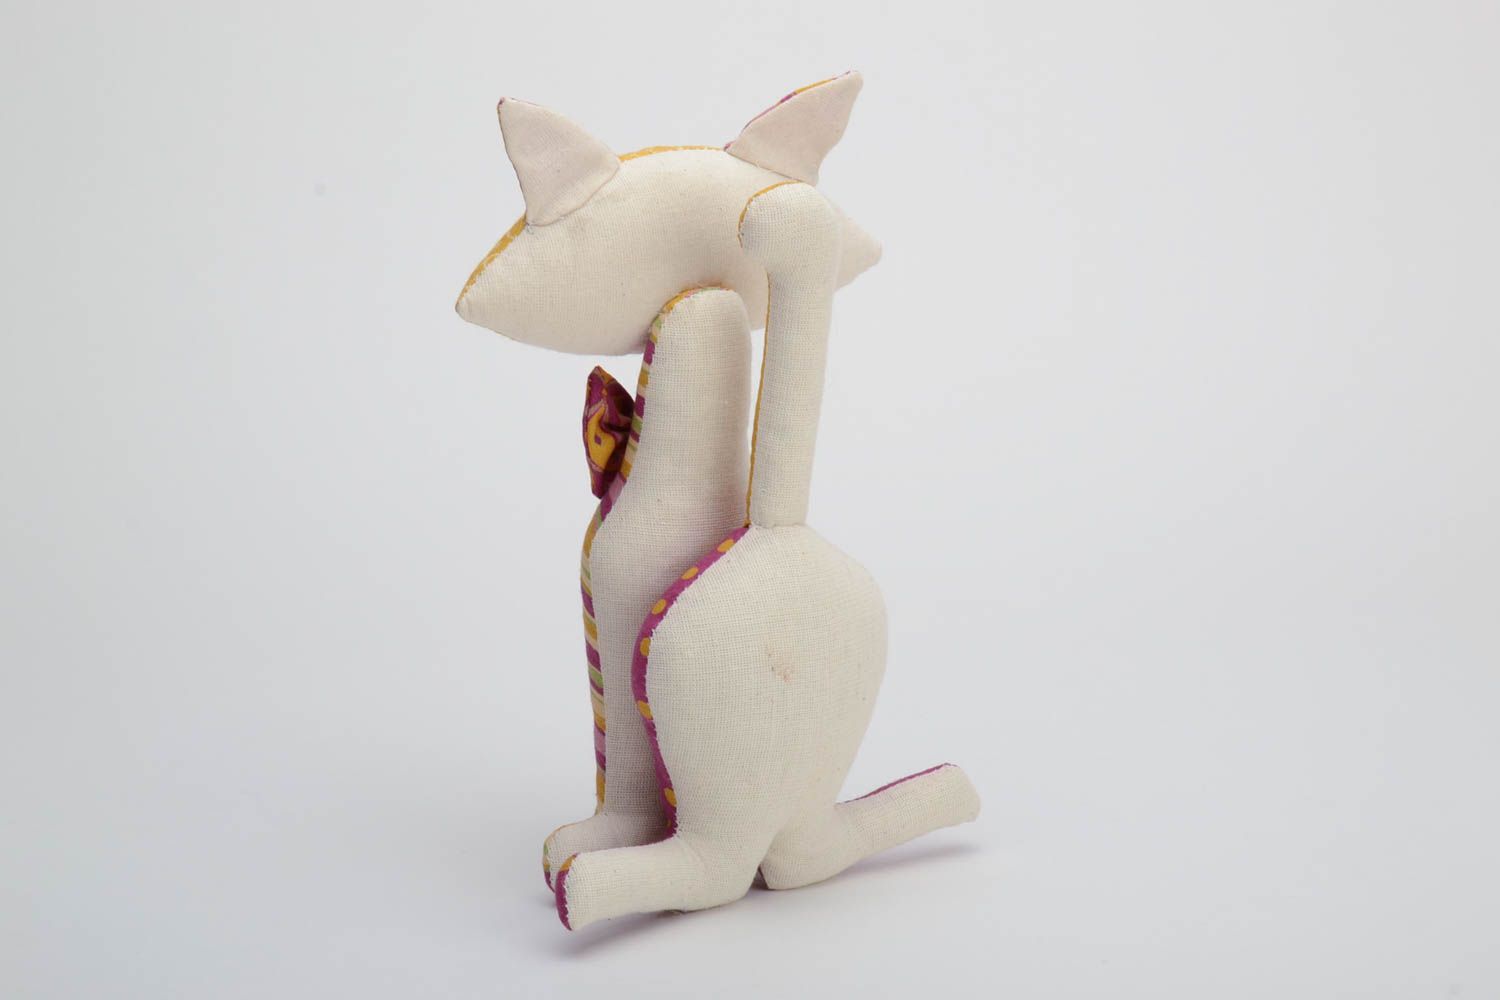 Дизайнерская игрушка из хлопка ручной работы мягкая в виде кота красивая оригинальная фото 3